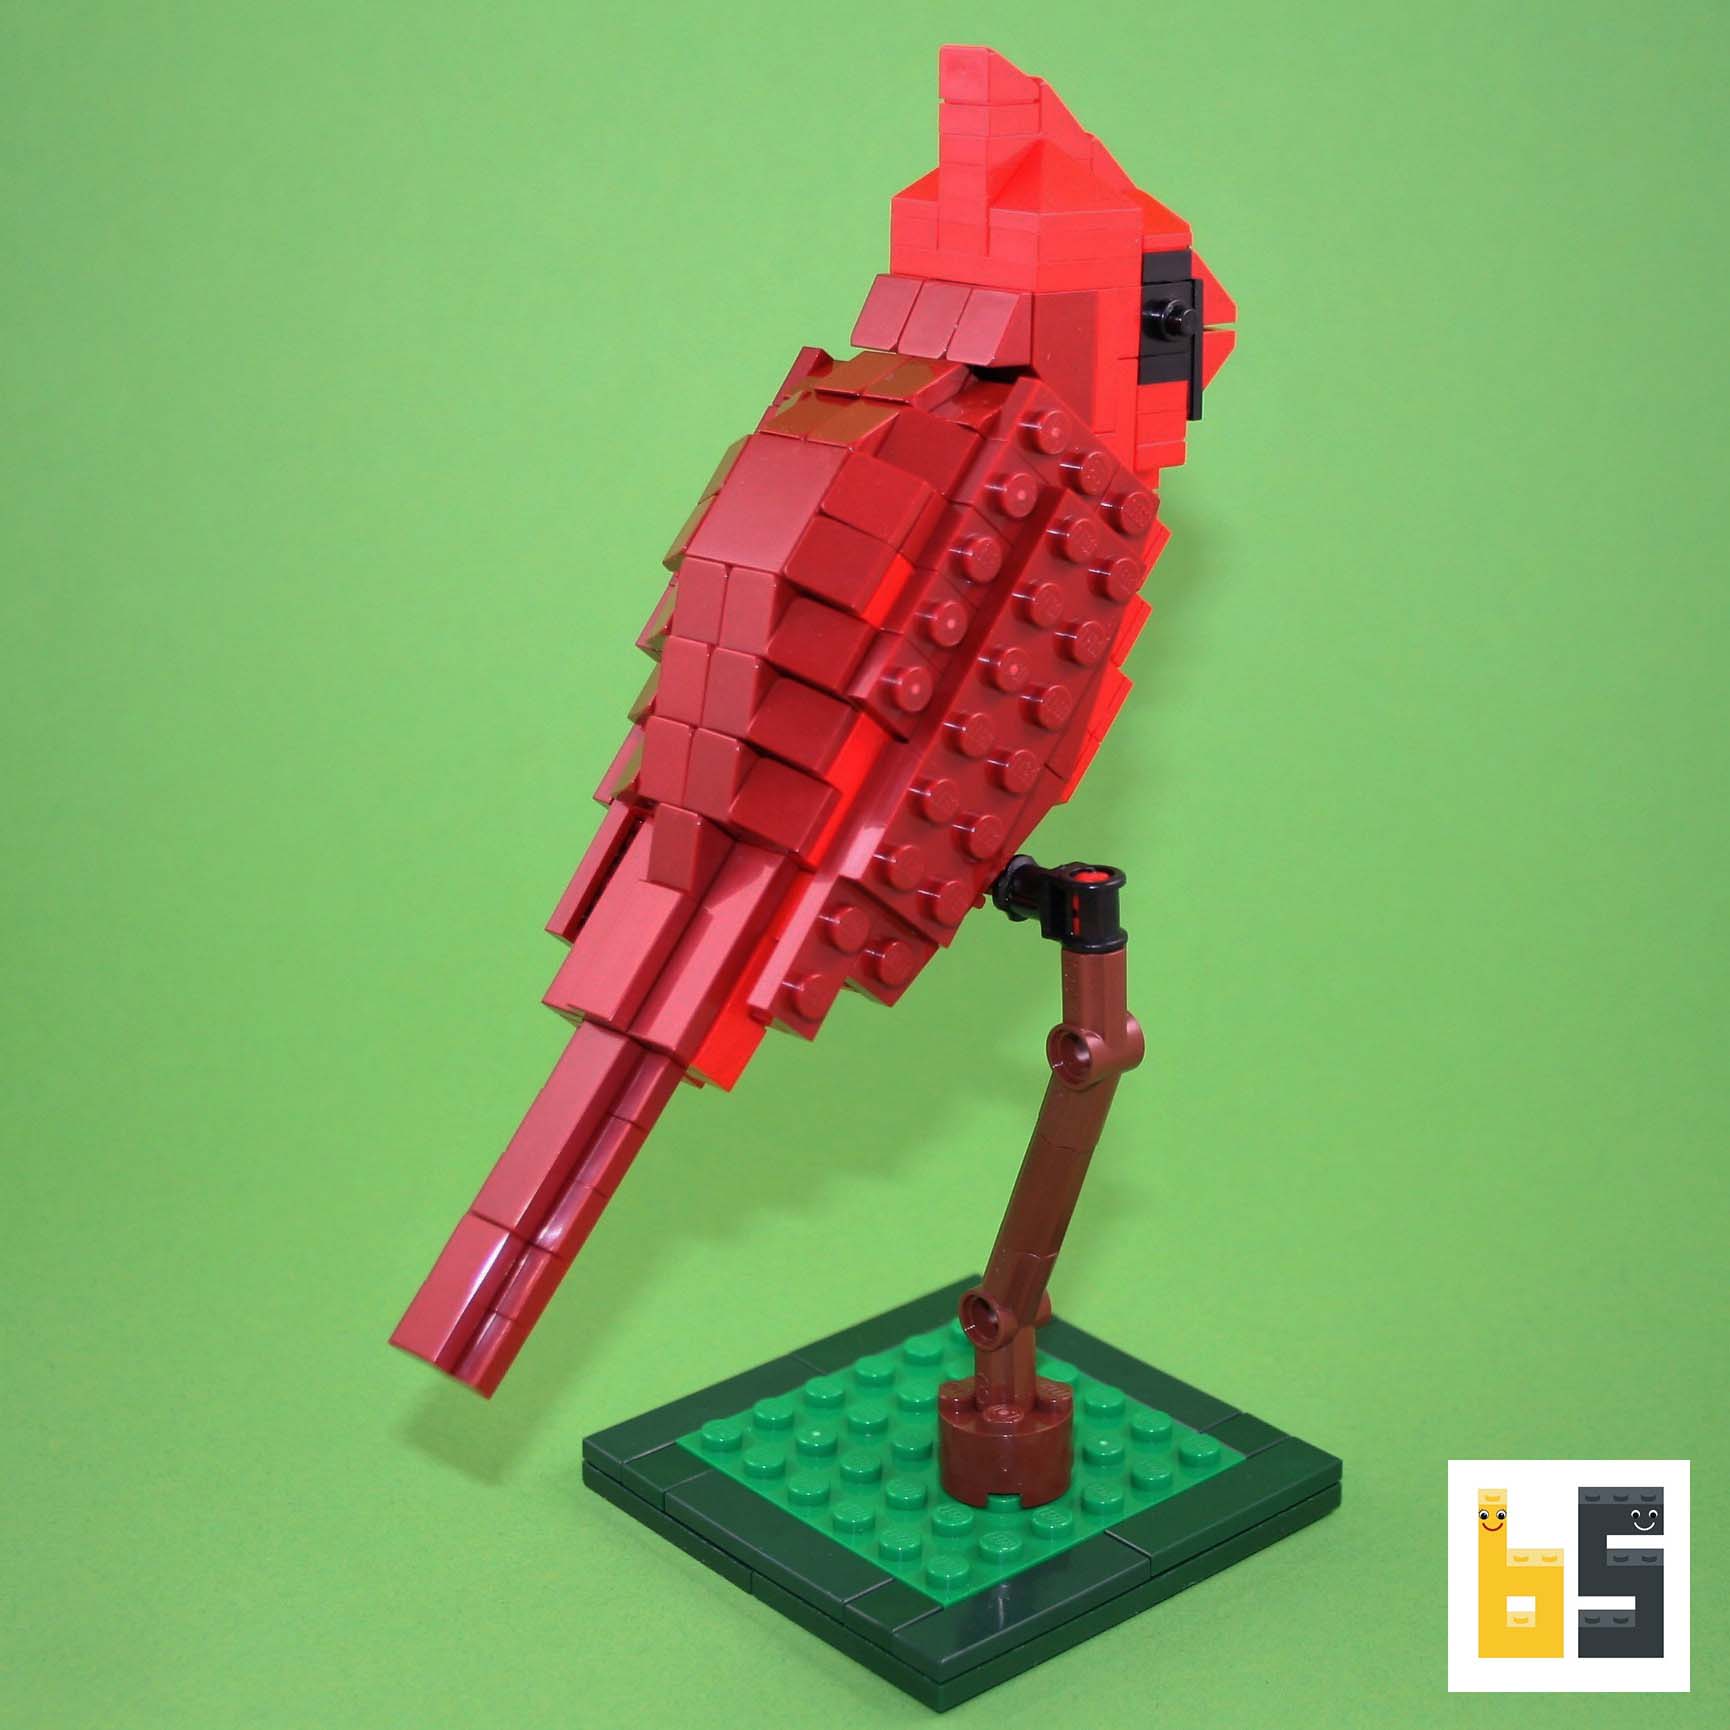 Lego birds : les briques s'envolent